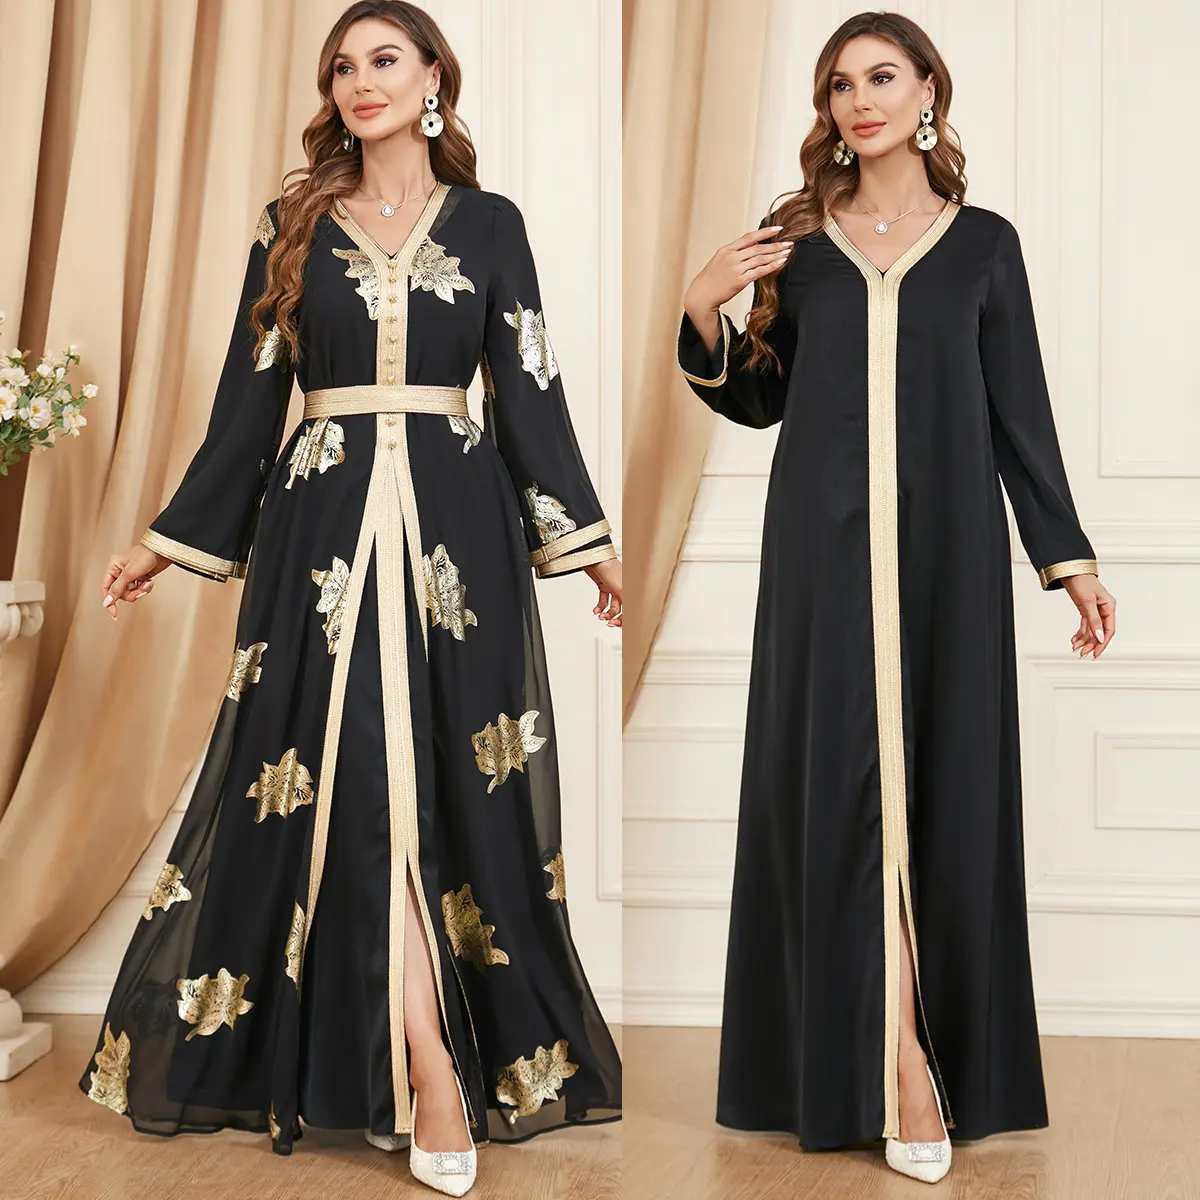 Nuovo vestito abaya musulmano alla moda con stampa per le donne abito modesto eid abito elegante abaya islamico moda donna araba autunno